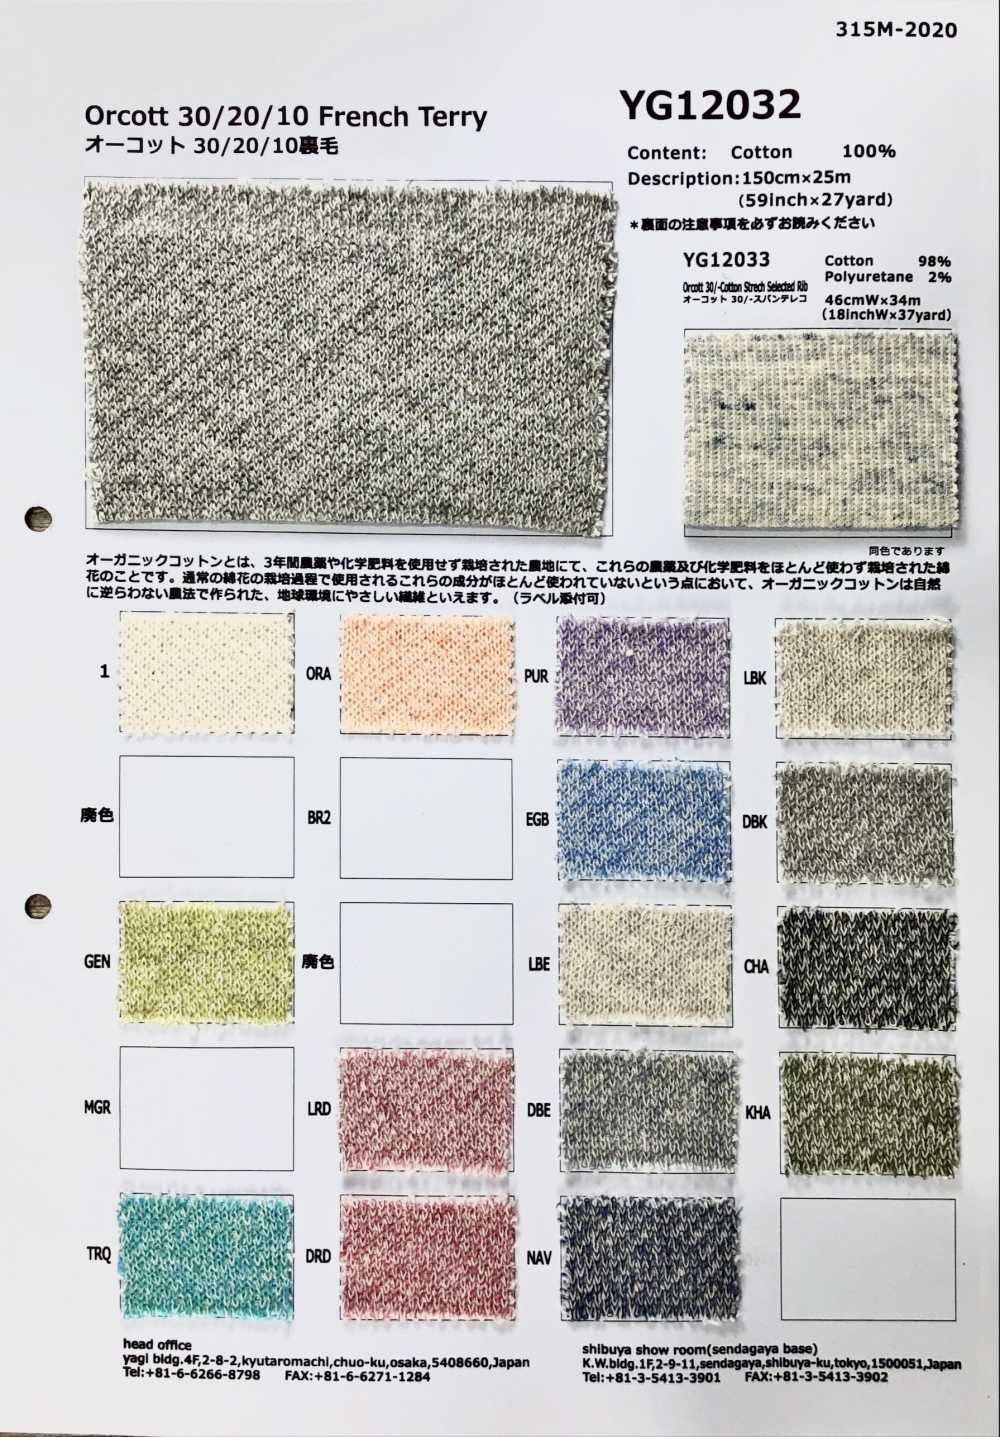 YG12032 Fodera In Pile Orcott[Tessile / Tessuto] Fujisaki Textile